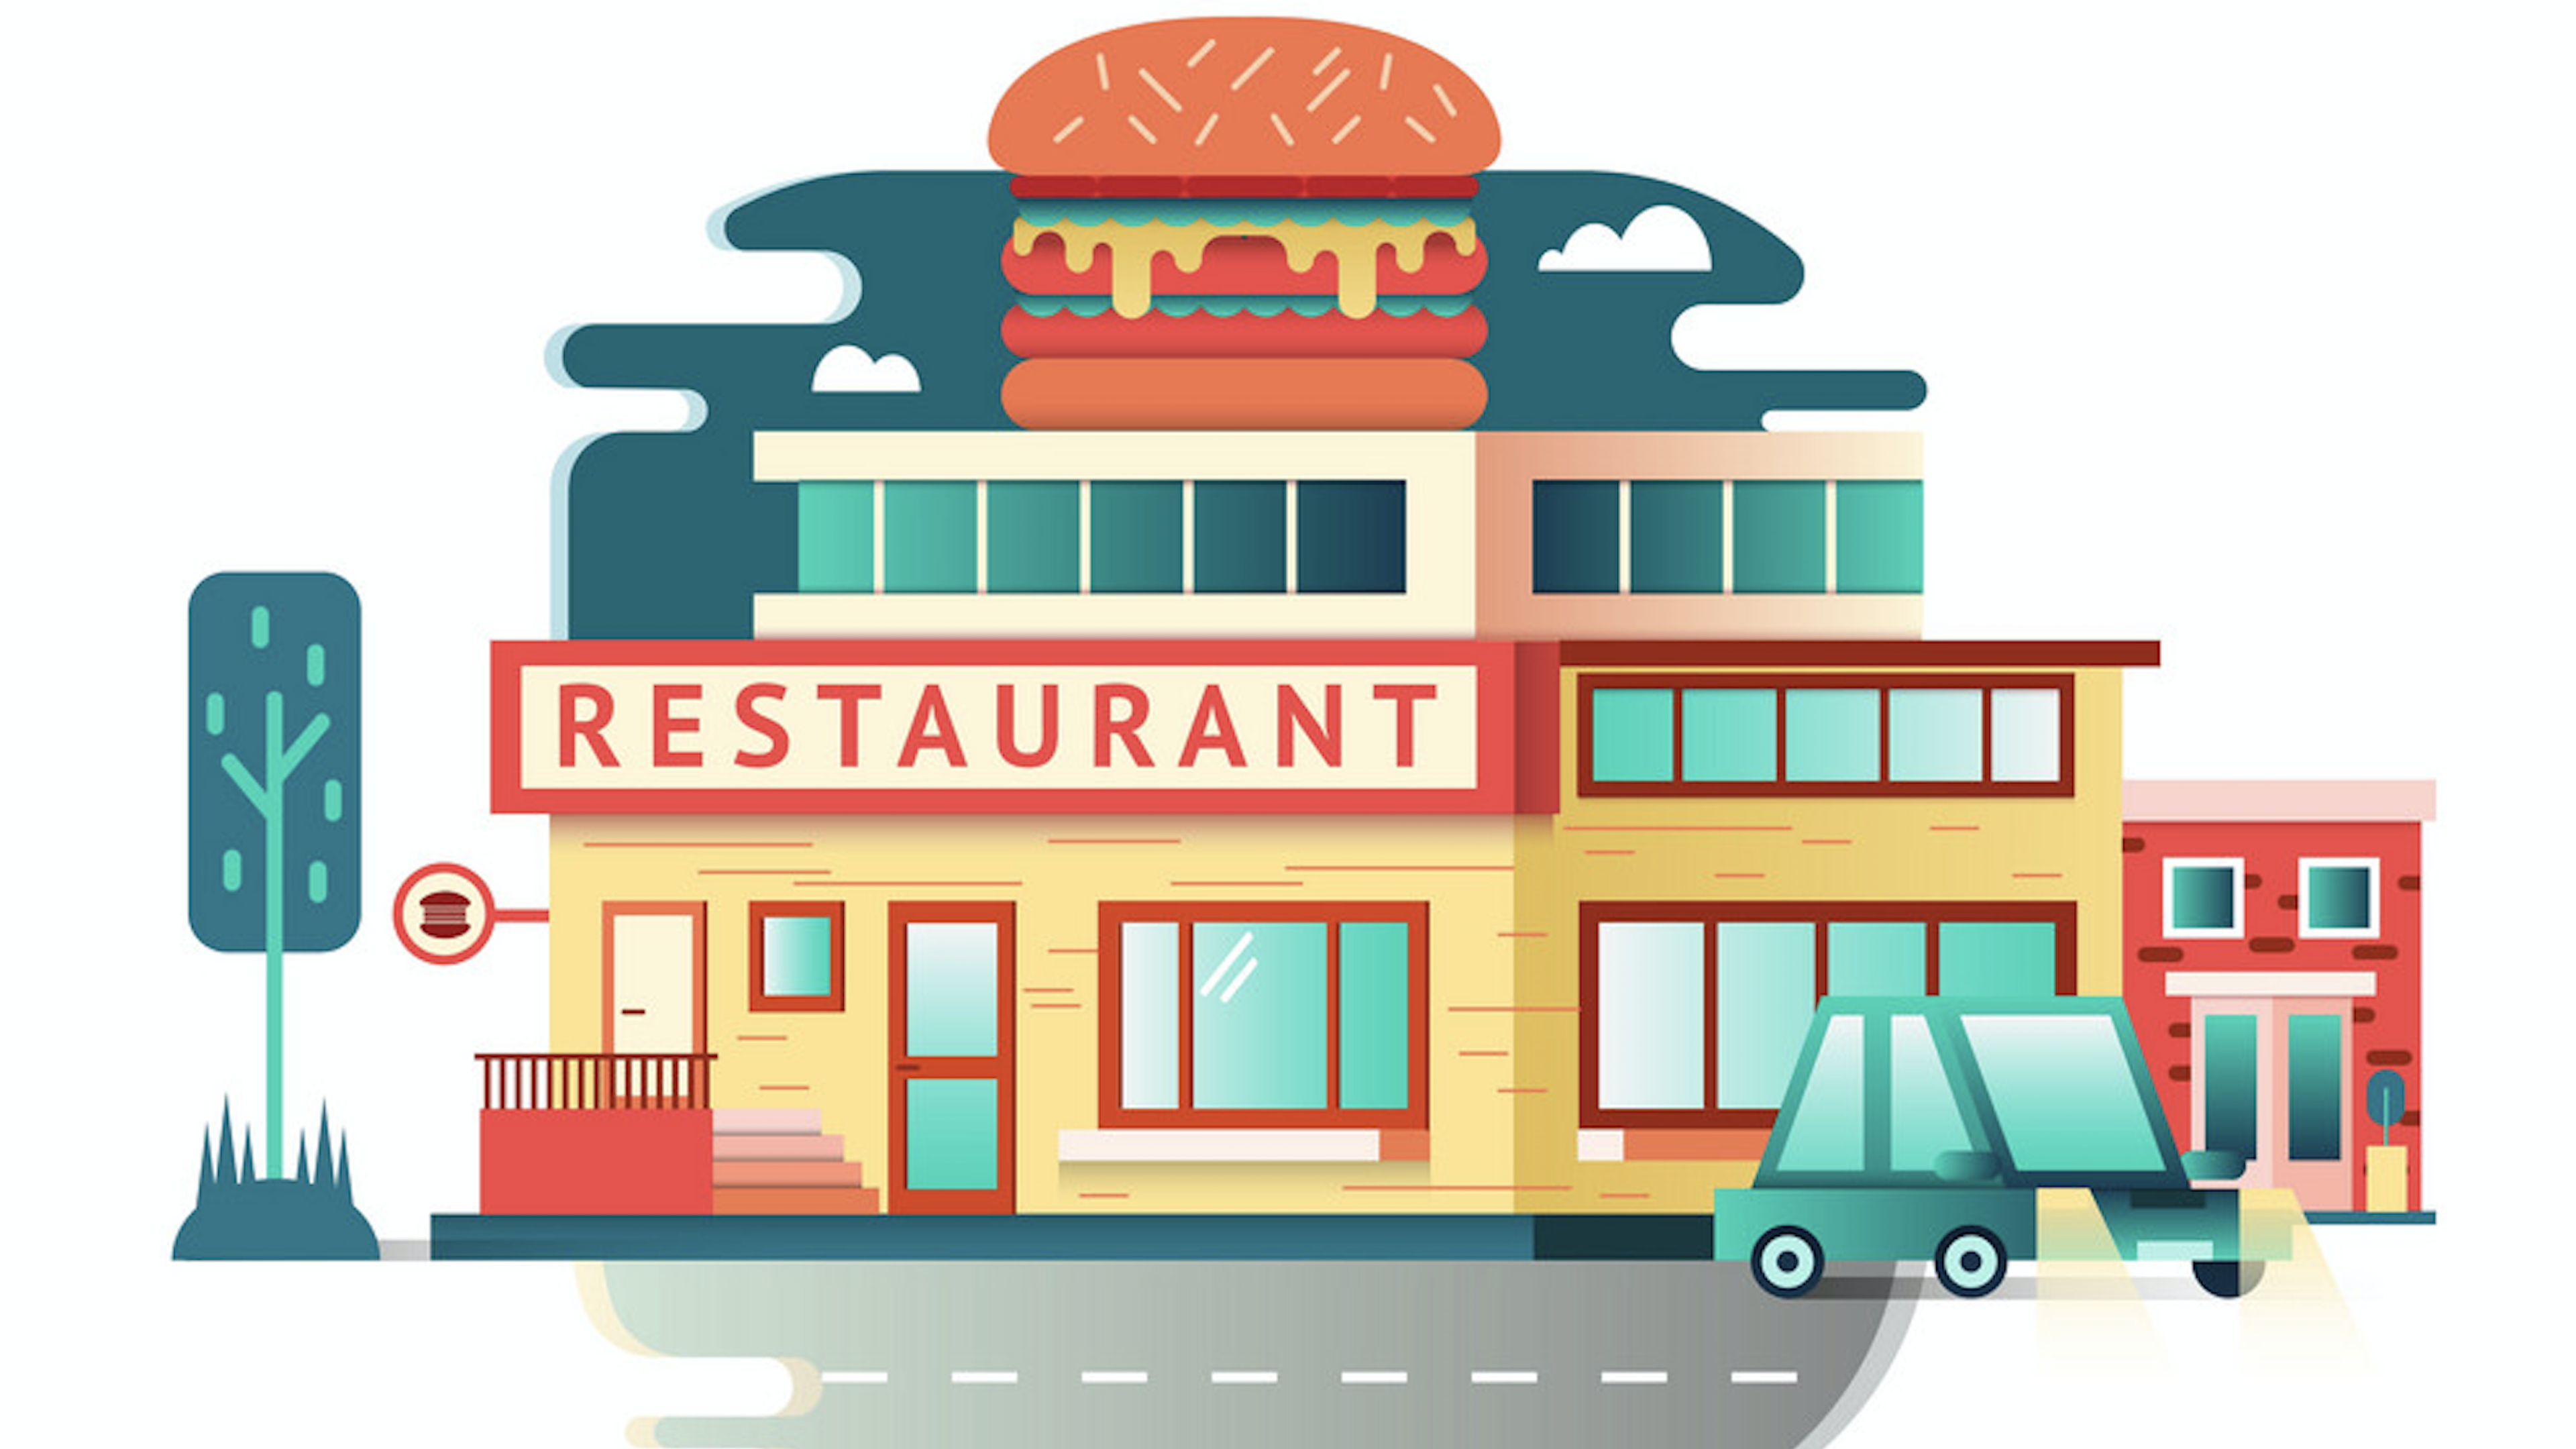 Understand Scala variances by building restaurants